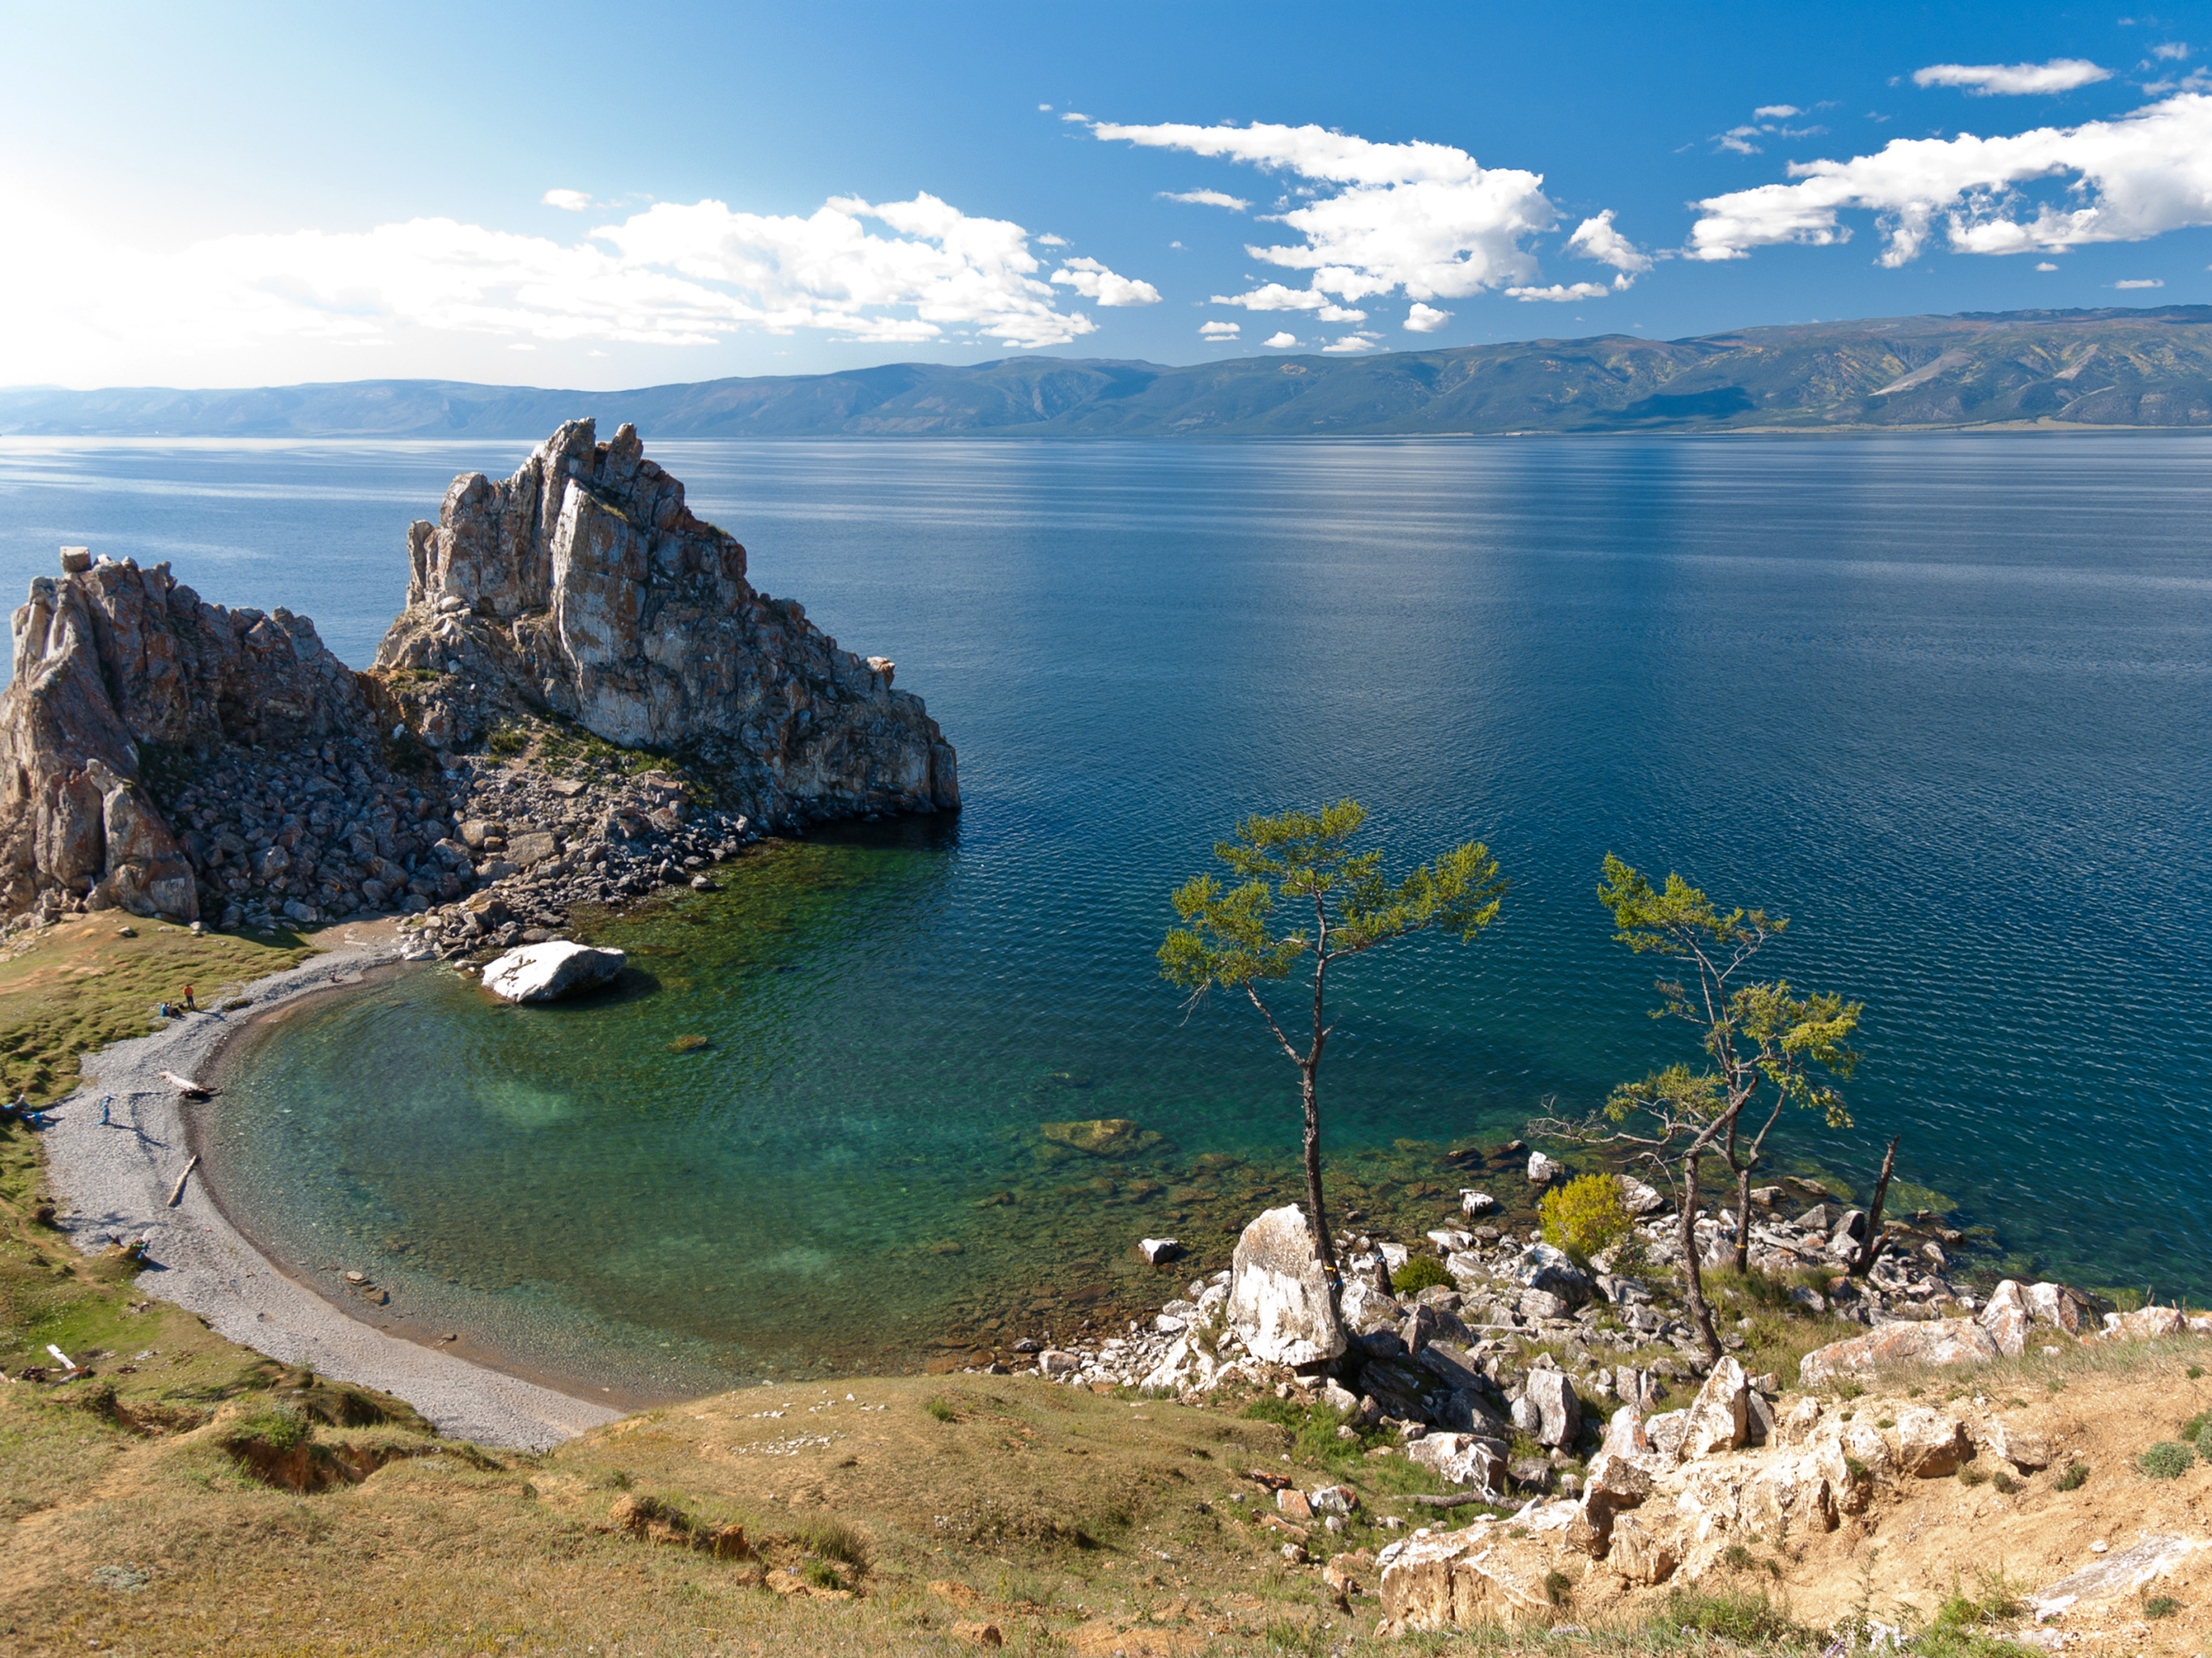 Остров Ольхон на Байкале. Озеро Байкал Бурятия. Остров Ольхон Восточная Сибирь. Озеро Байкал (Иркутская область, Иркутск). Как называется озеро в россии